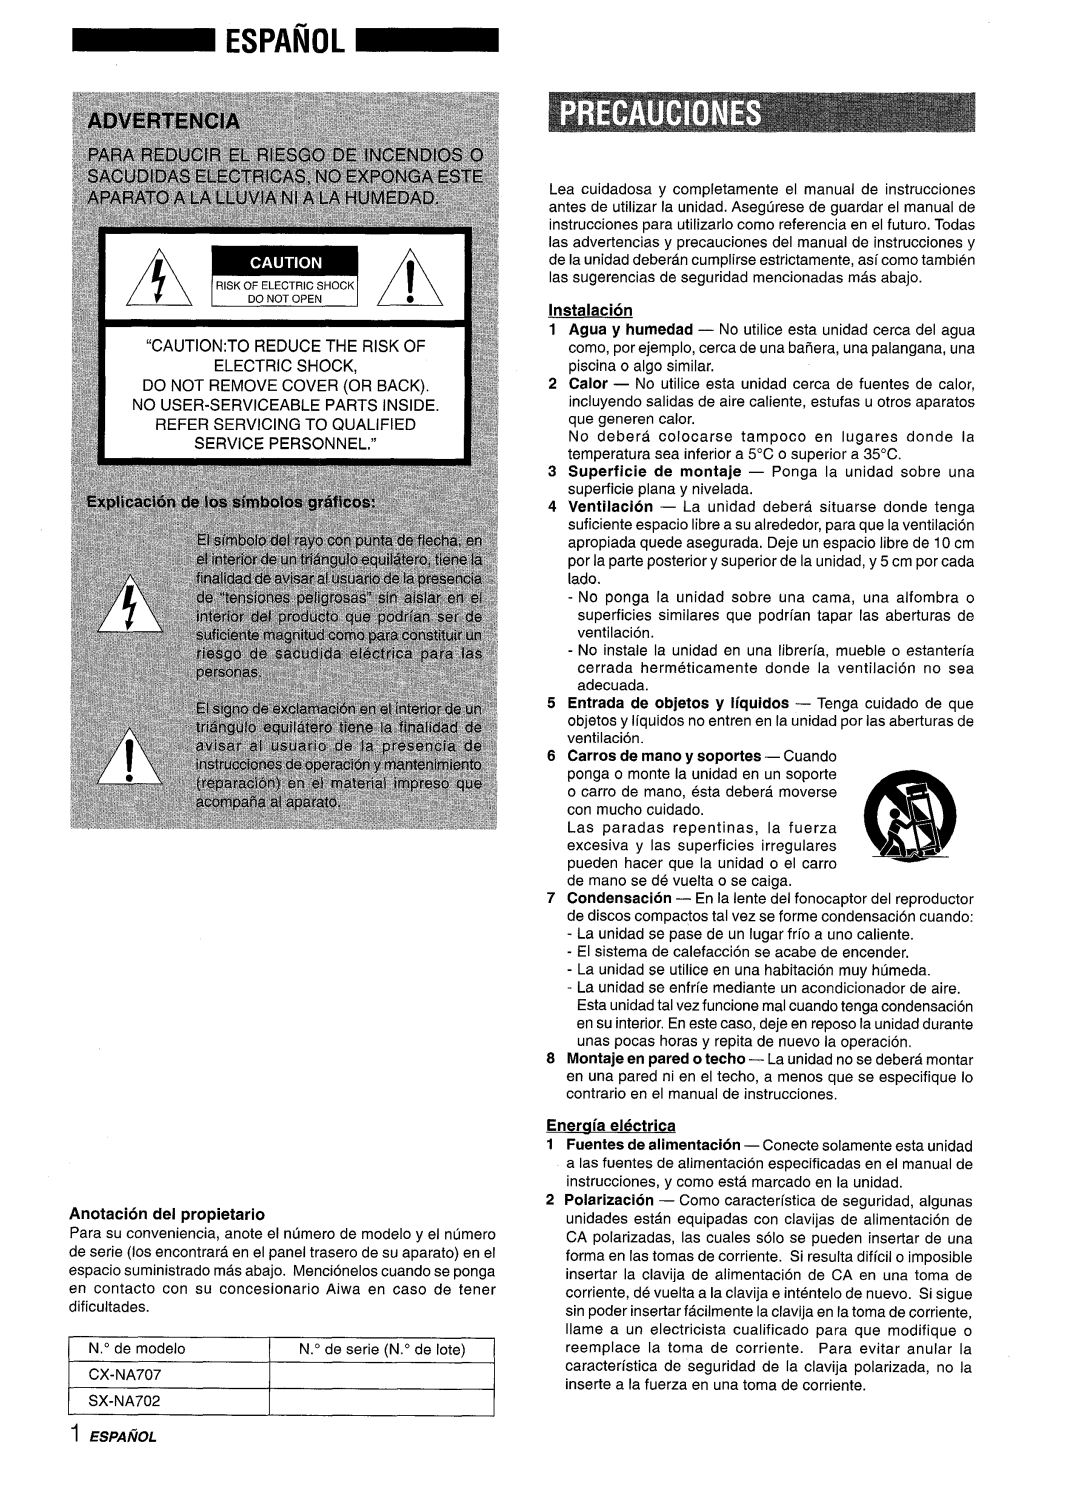 Sony NSX-A707 manual Eneraia electrica, Anotacion del propietario, Instalacion 